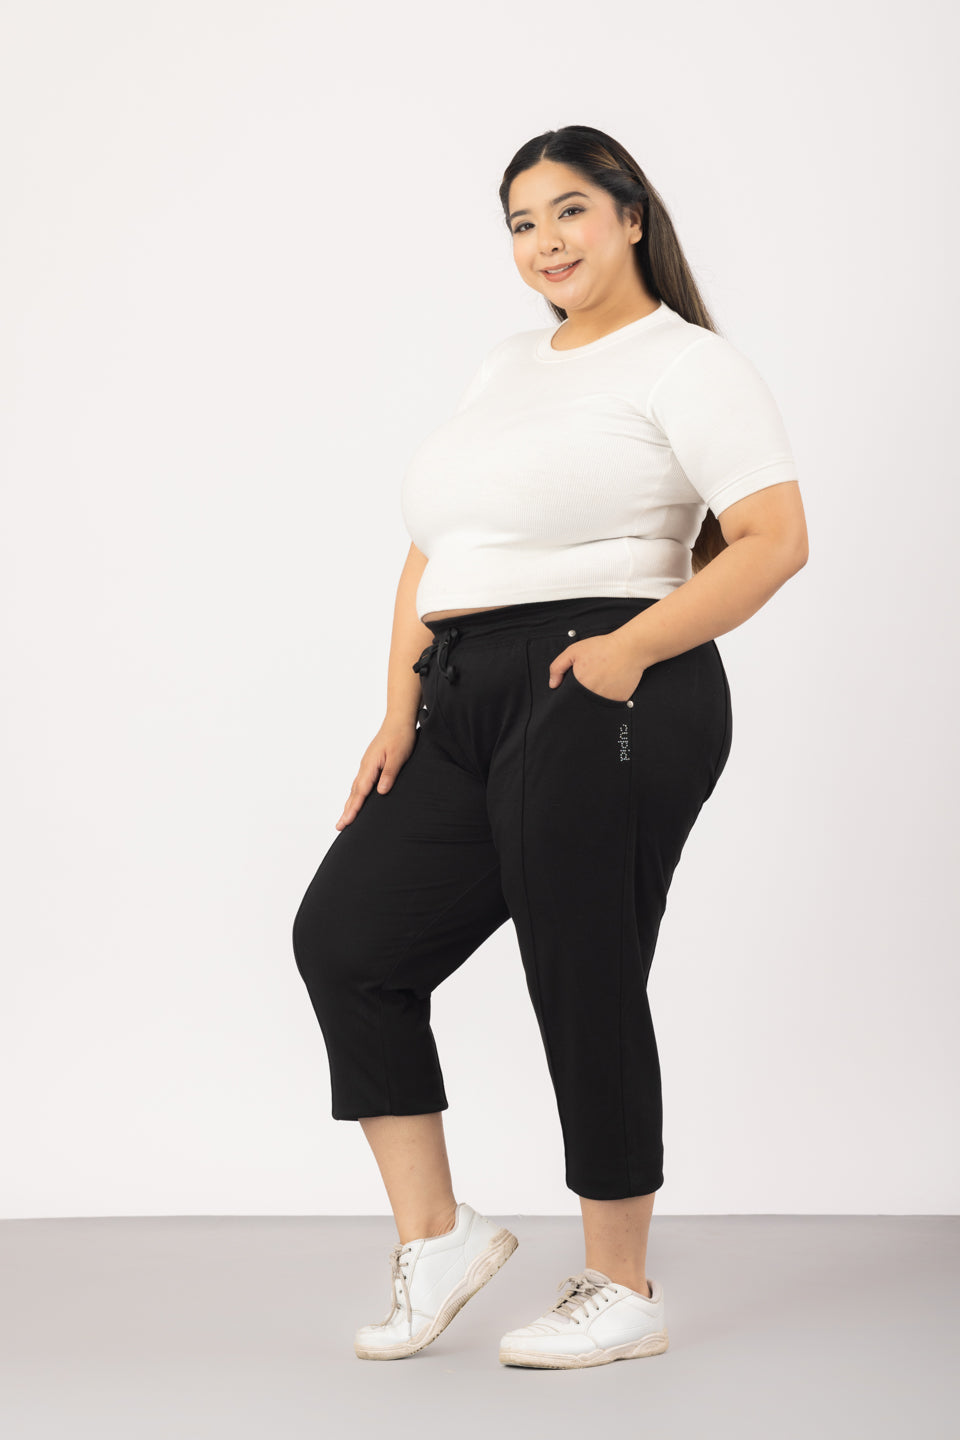 Buy Comfy Cotton Black Plus Size Capris Pants For Women Online In